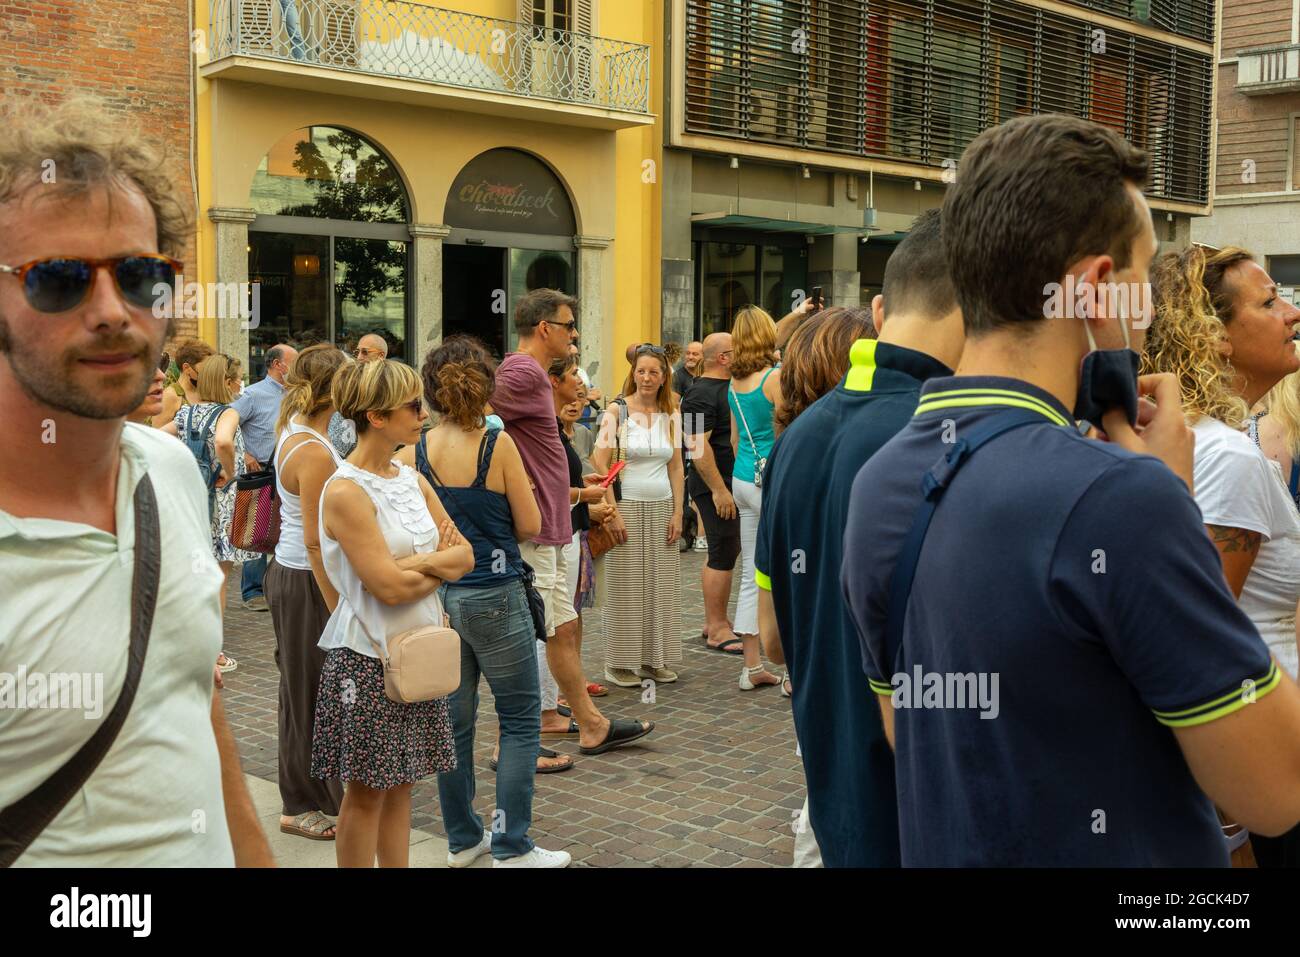 CREMONA, ITALIE - 24 juillet 2021 : une foule de personnes protestant contre le vaccin COVID-19 à Cremona, Italie Banque D'Images